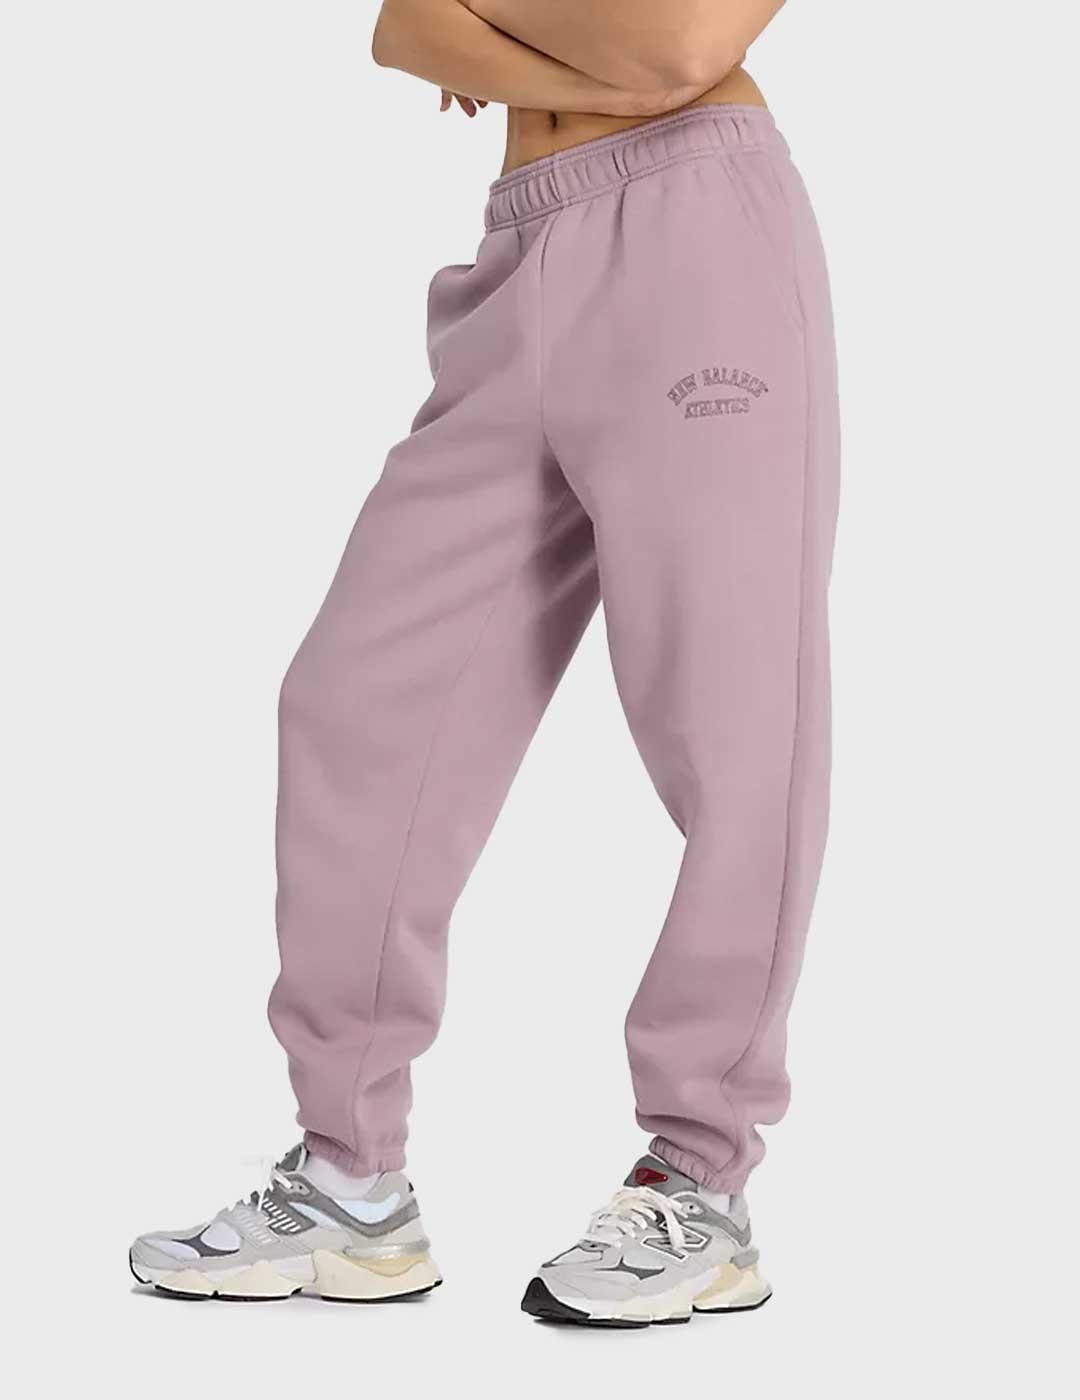 New Balance Graphic Fleece pantalón morado para mujer